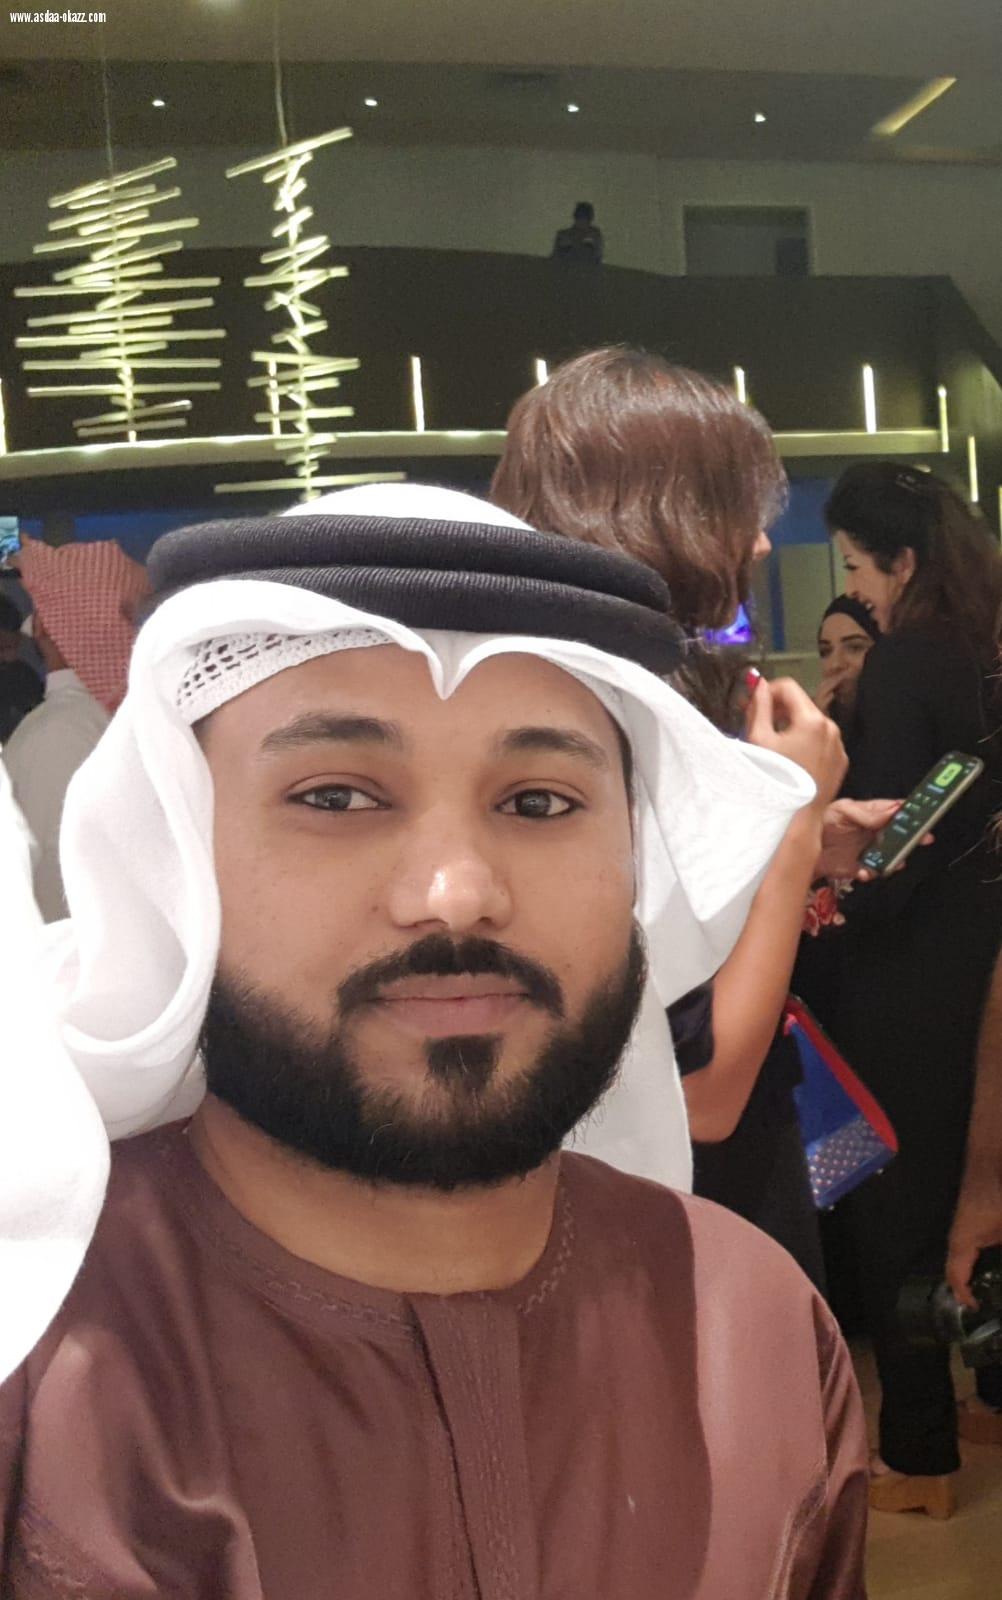 مافي مشروع بلا مخاطره   للفنان فهد الماص تحققت أمام الجمهور  Got Talent الأول مرة في المملكة اكتشف للمواهب  البحرين